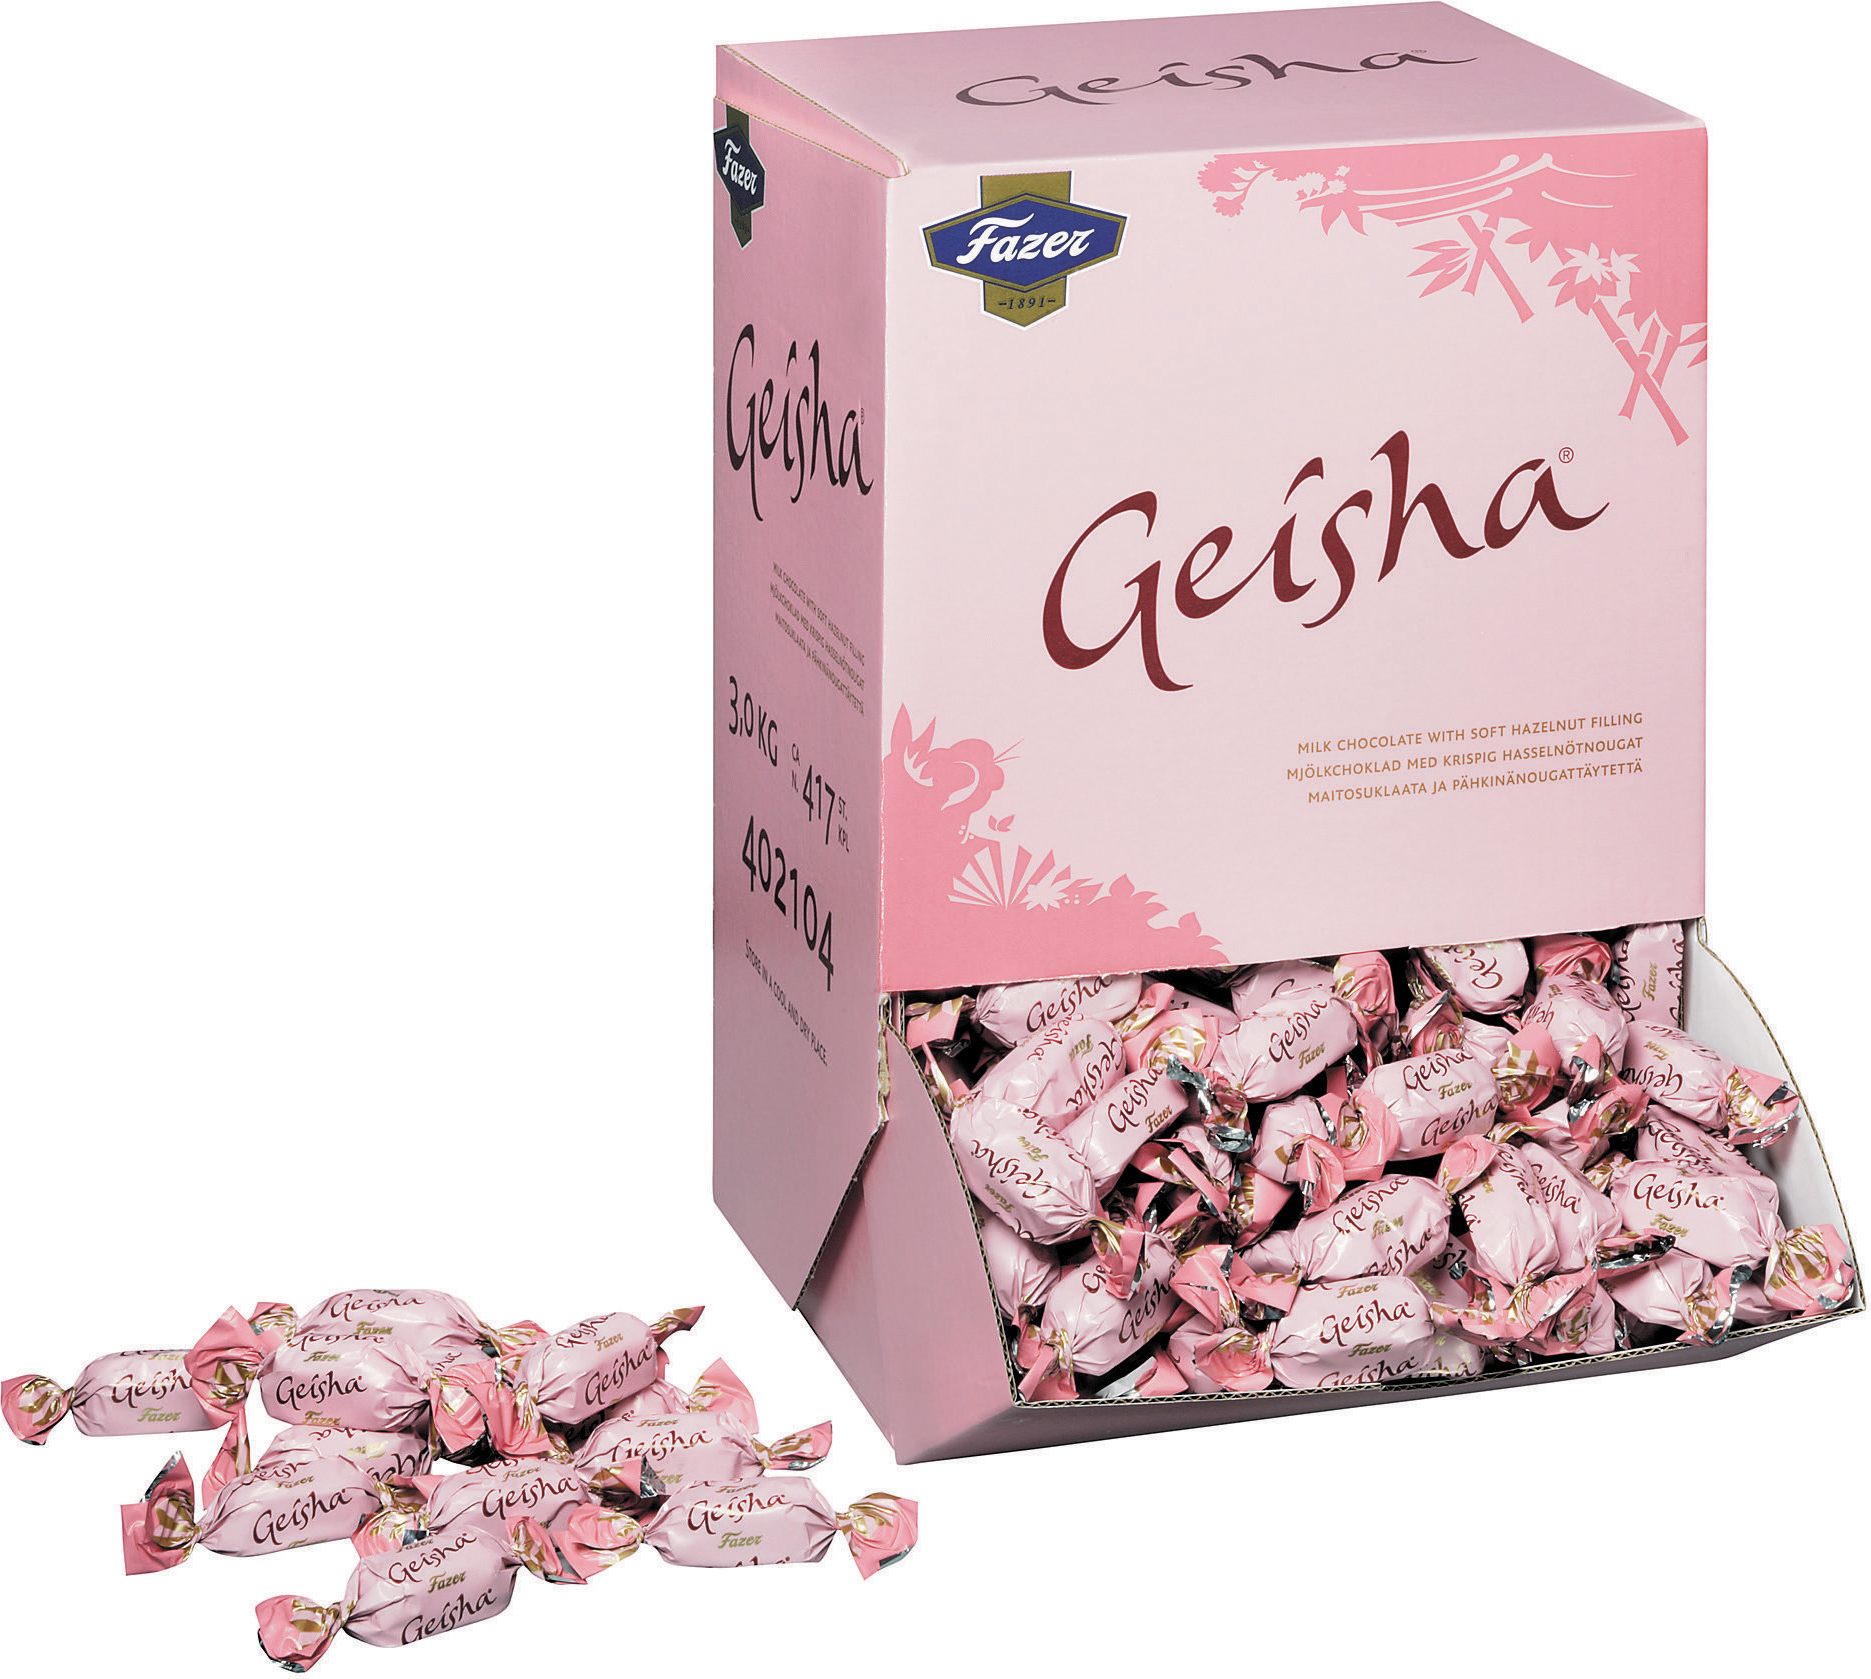 [8551289] Geisha original box 3kg